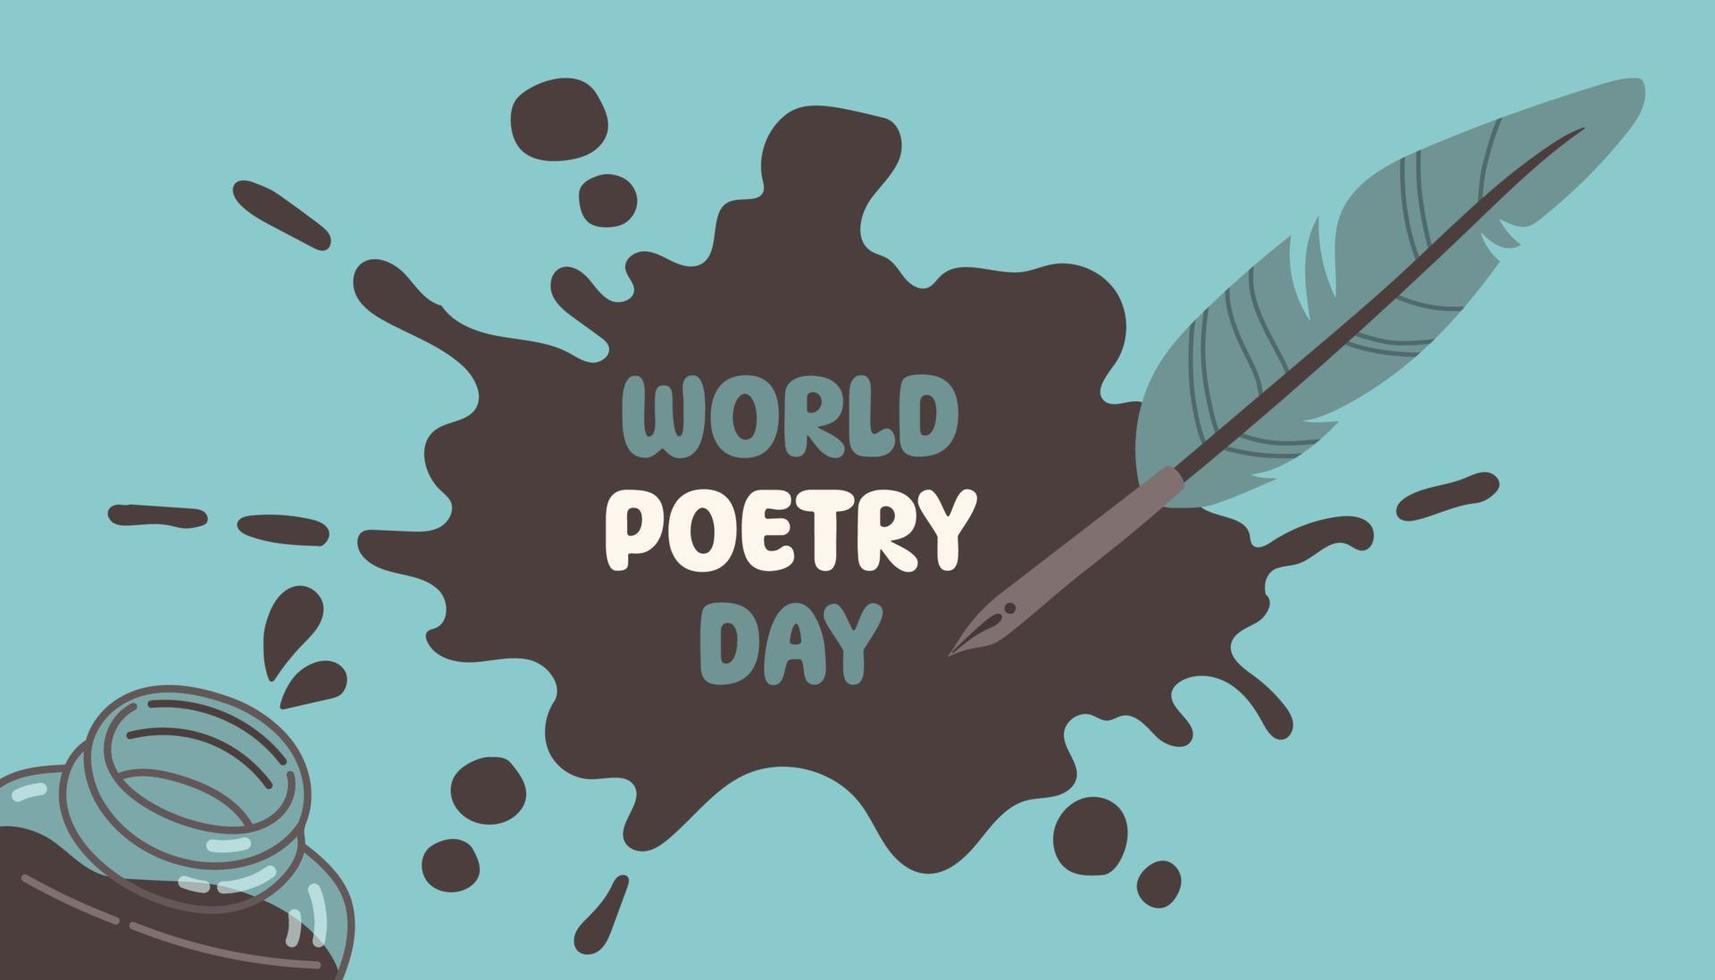 wereld poëzie dag, maart 21. vector illustratie van inktpot en veerkracht.